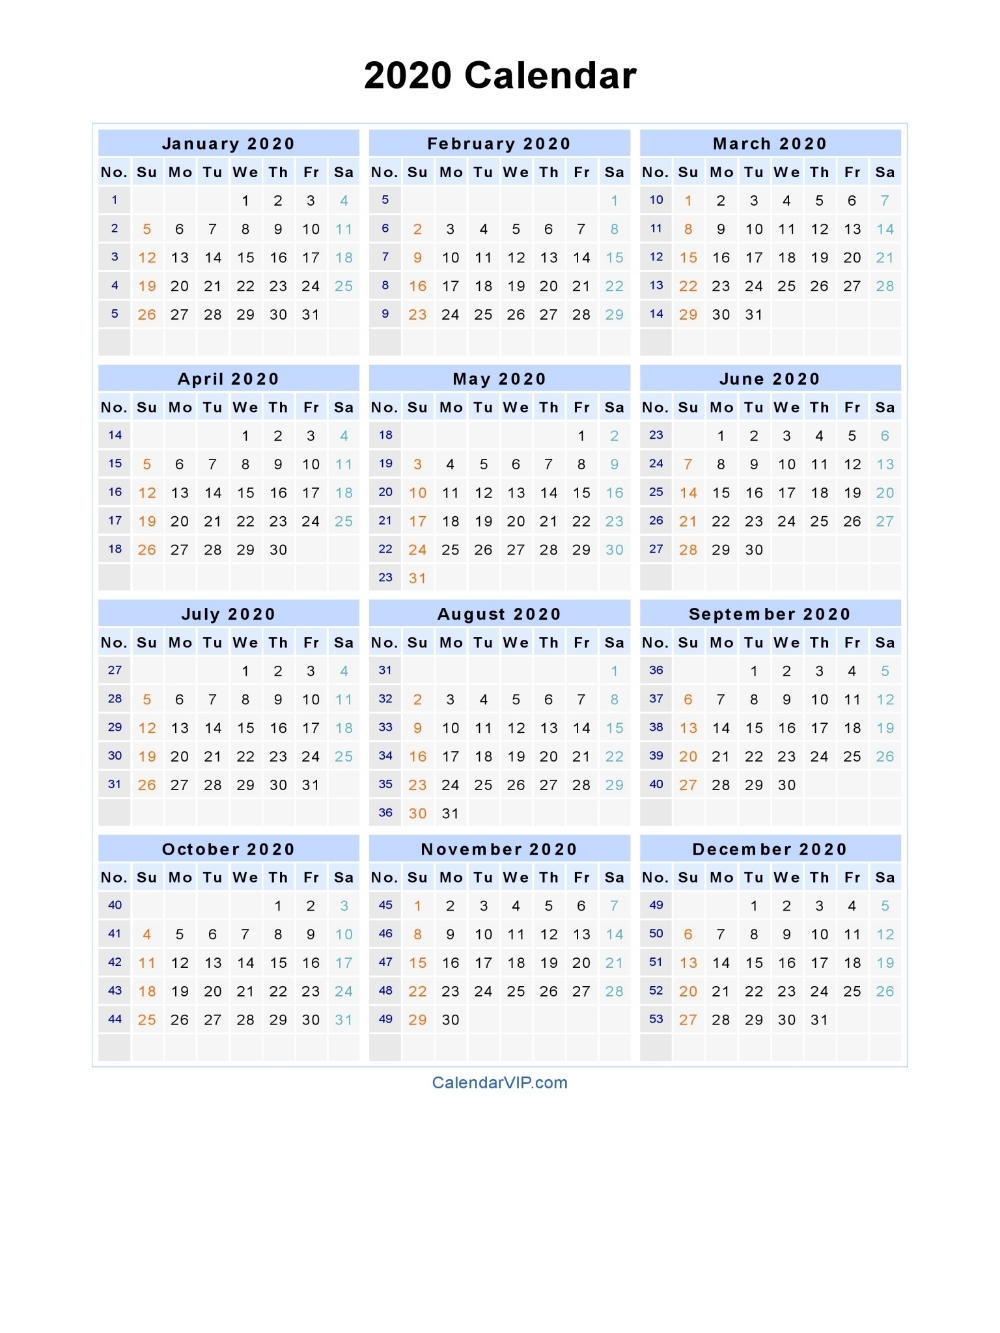 2020 Calendar - Blank Printable Calendar Template In Pdf Perky 2020 Calendar With Week Numbers Uk